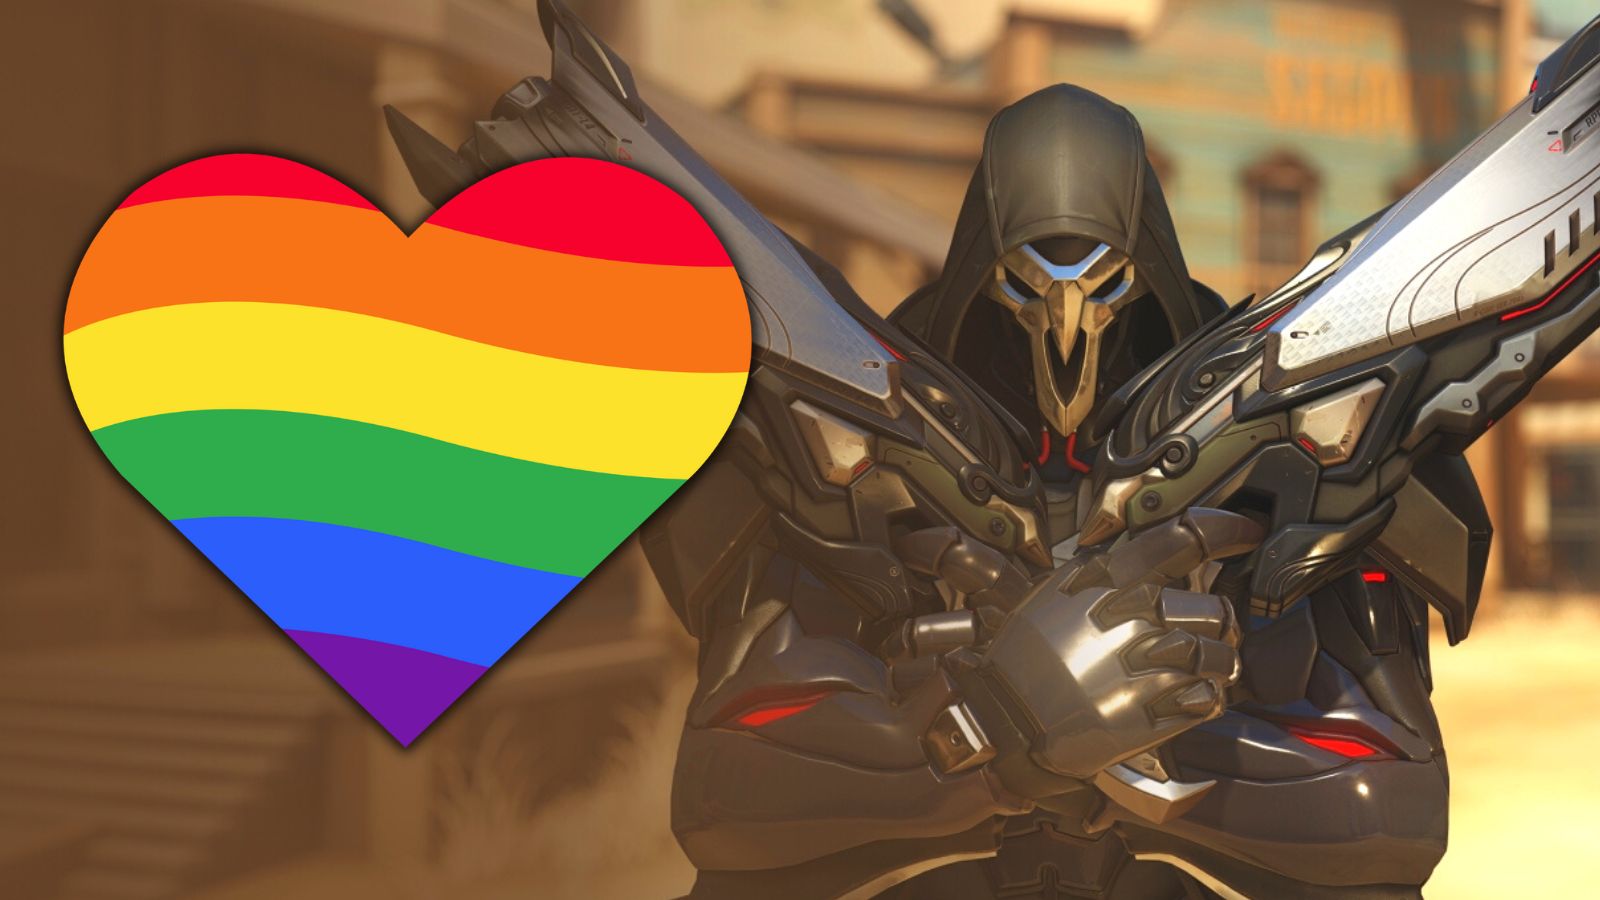 Duo z Overwatch 2 Reaper přestalo bojovat a „zamilovalo se“ během akce Pride